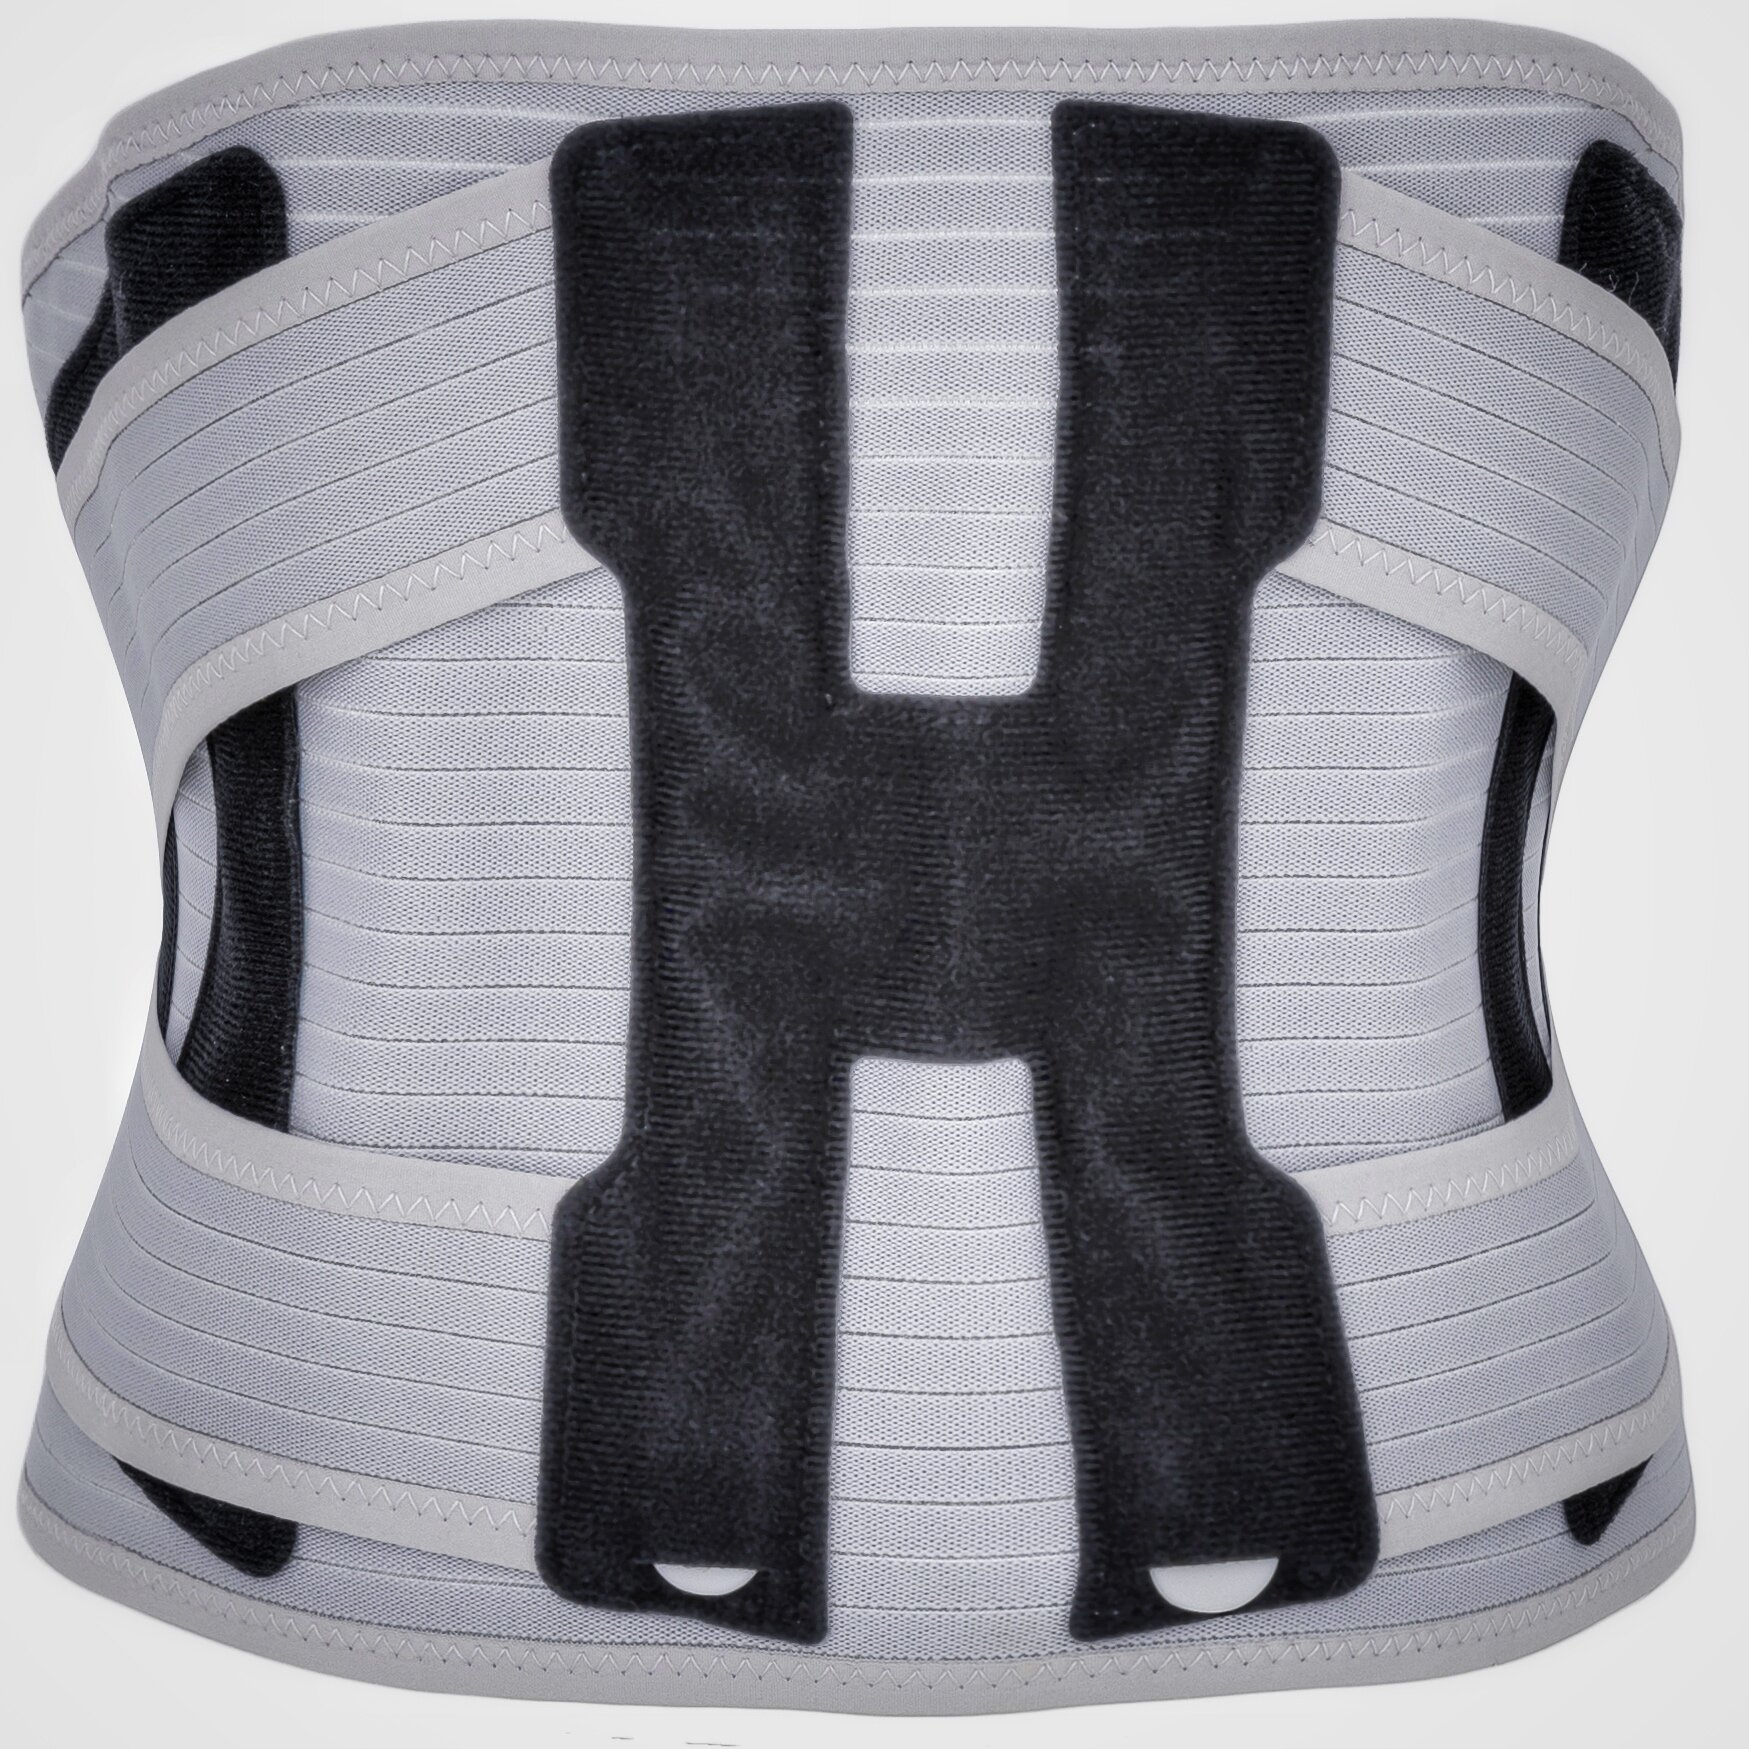 Корсет для спины ортопедический поясничный с 2-х ступенчатой степенью фиксации - р. XL ( обхват талии 101-122 см), серый